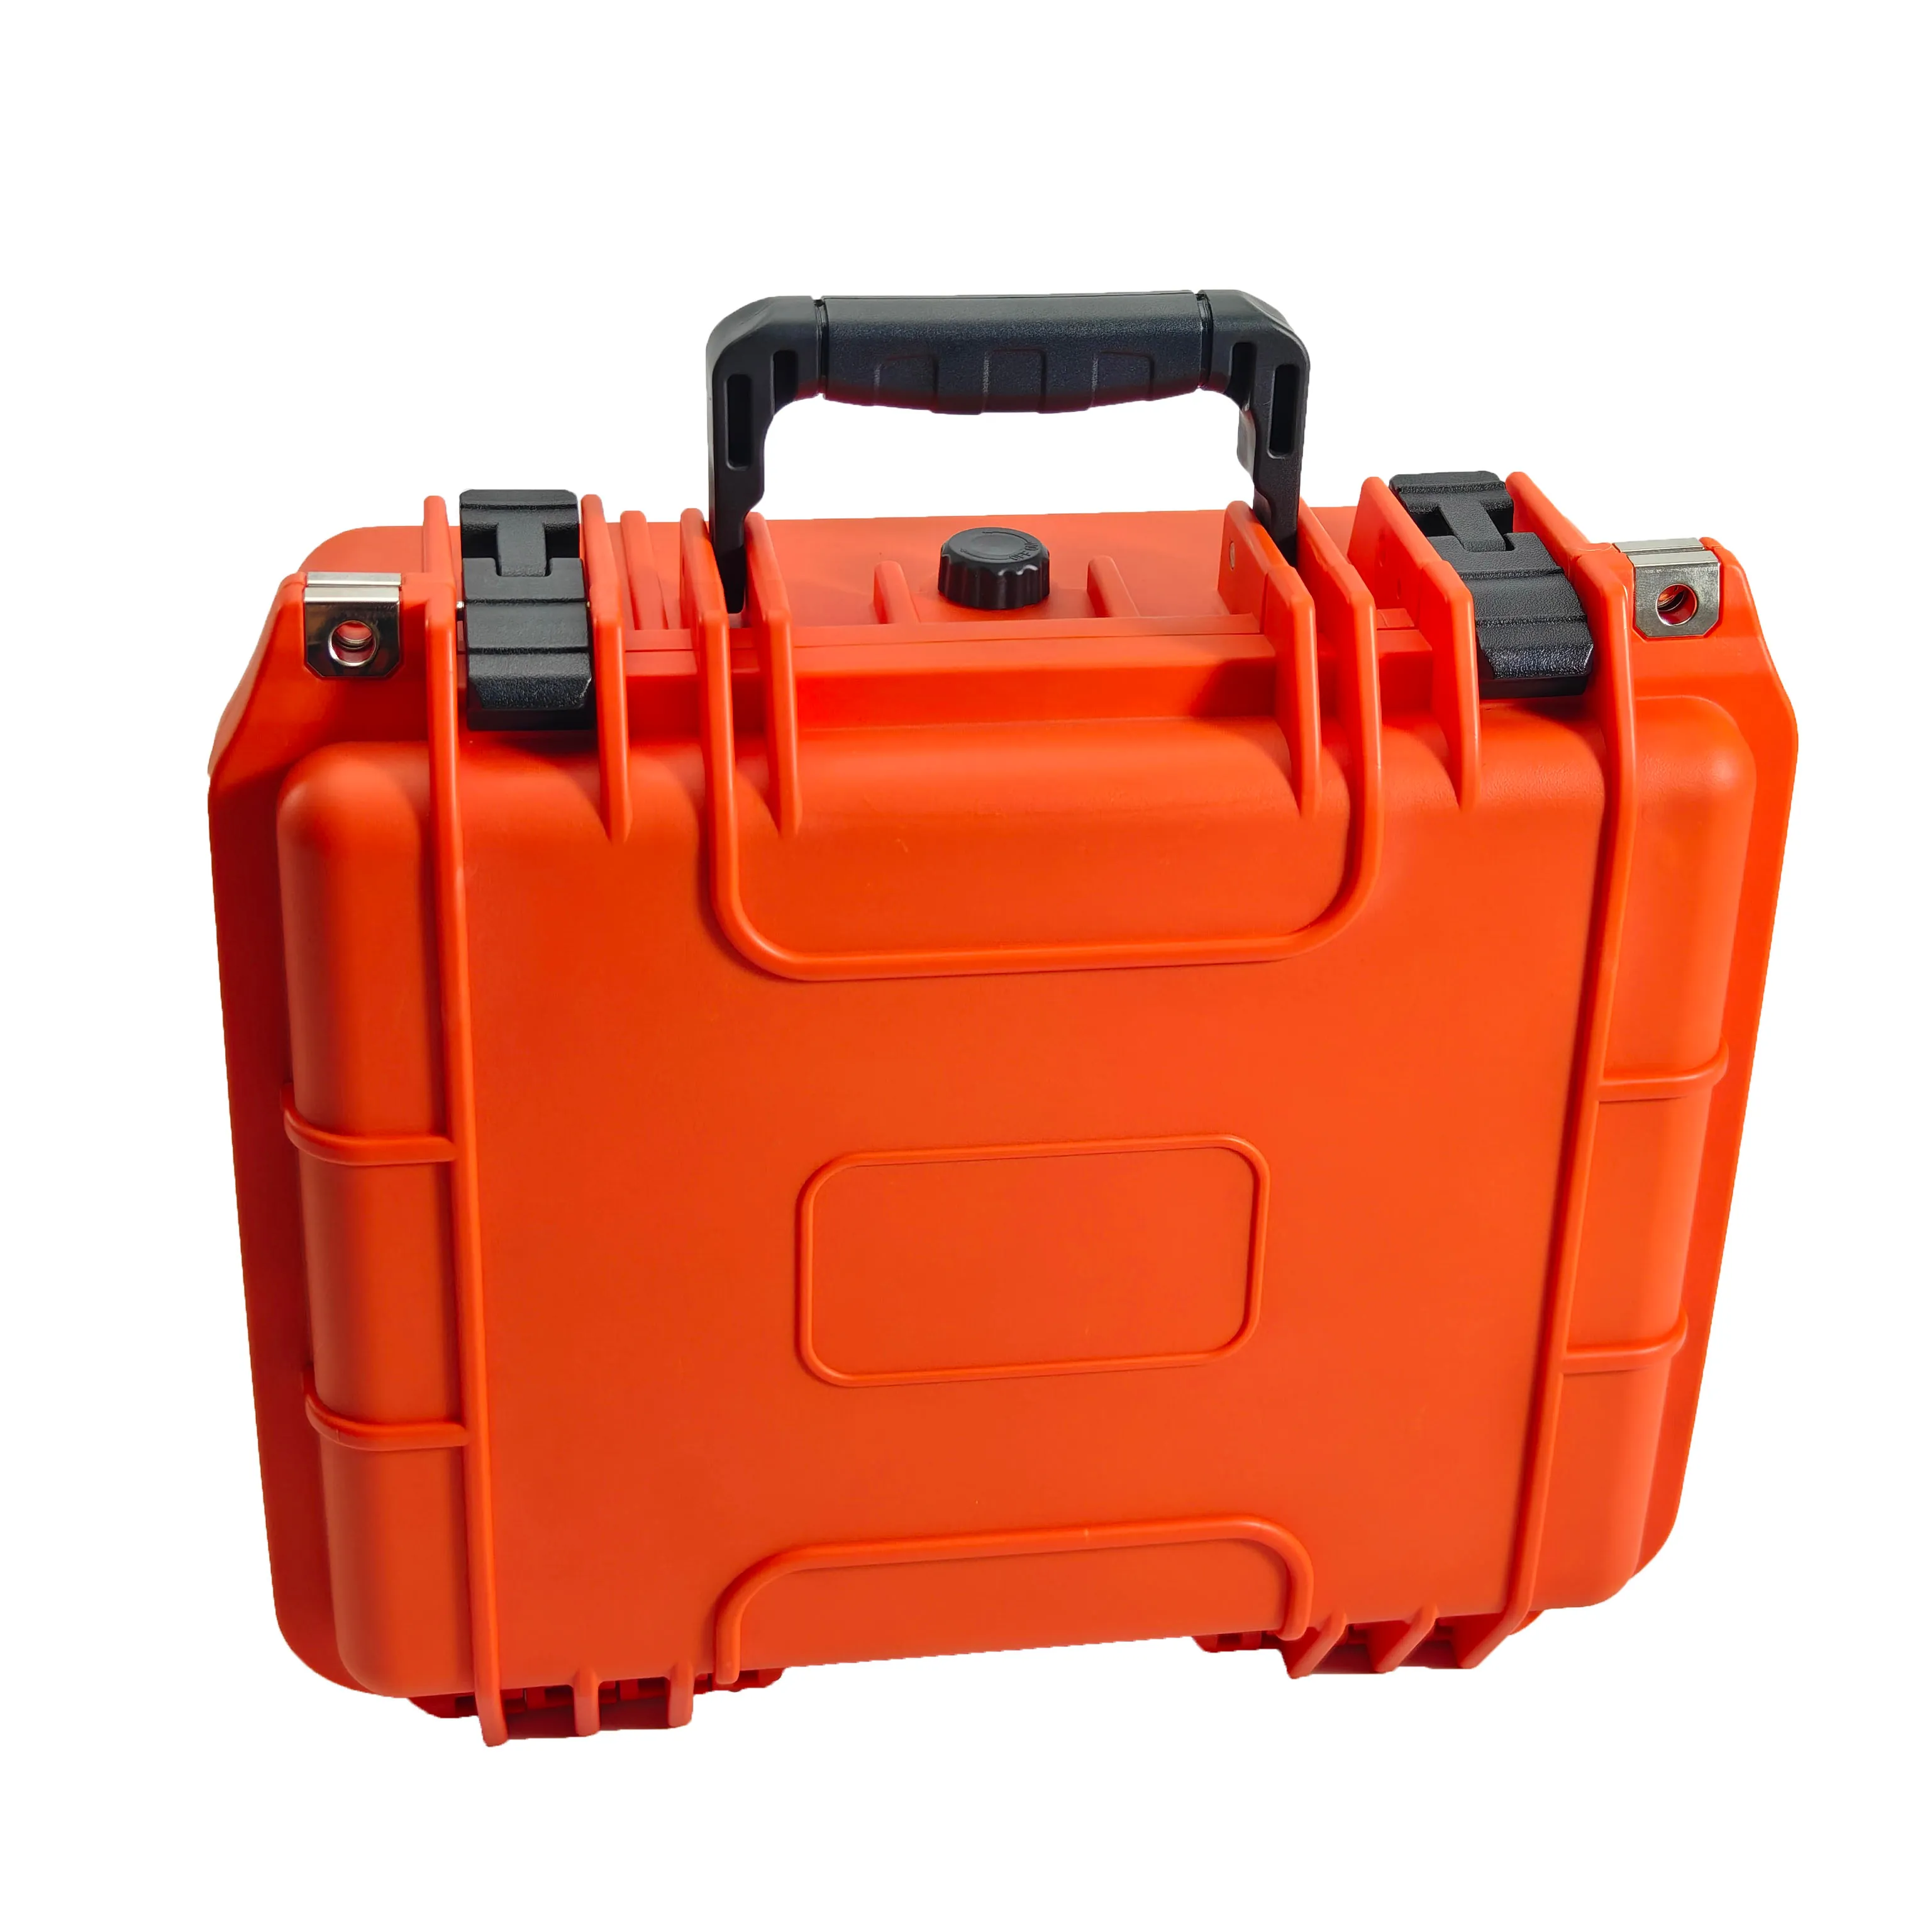 Kotak alat tahan guncangan, warna oranye IP67 tahan air tahan debu portabel plastik keras